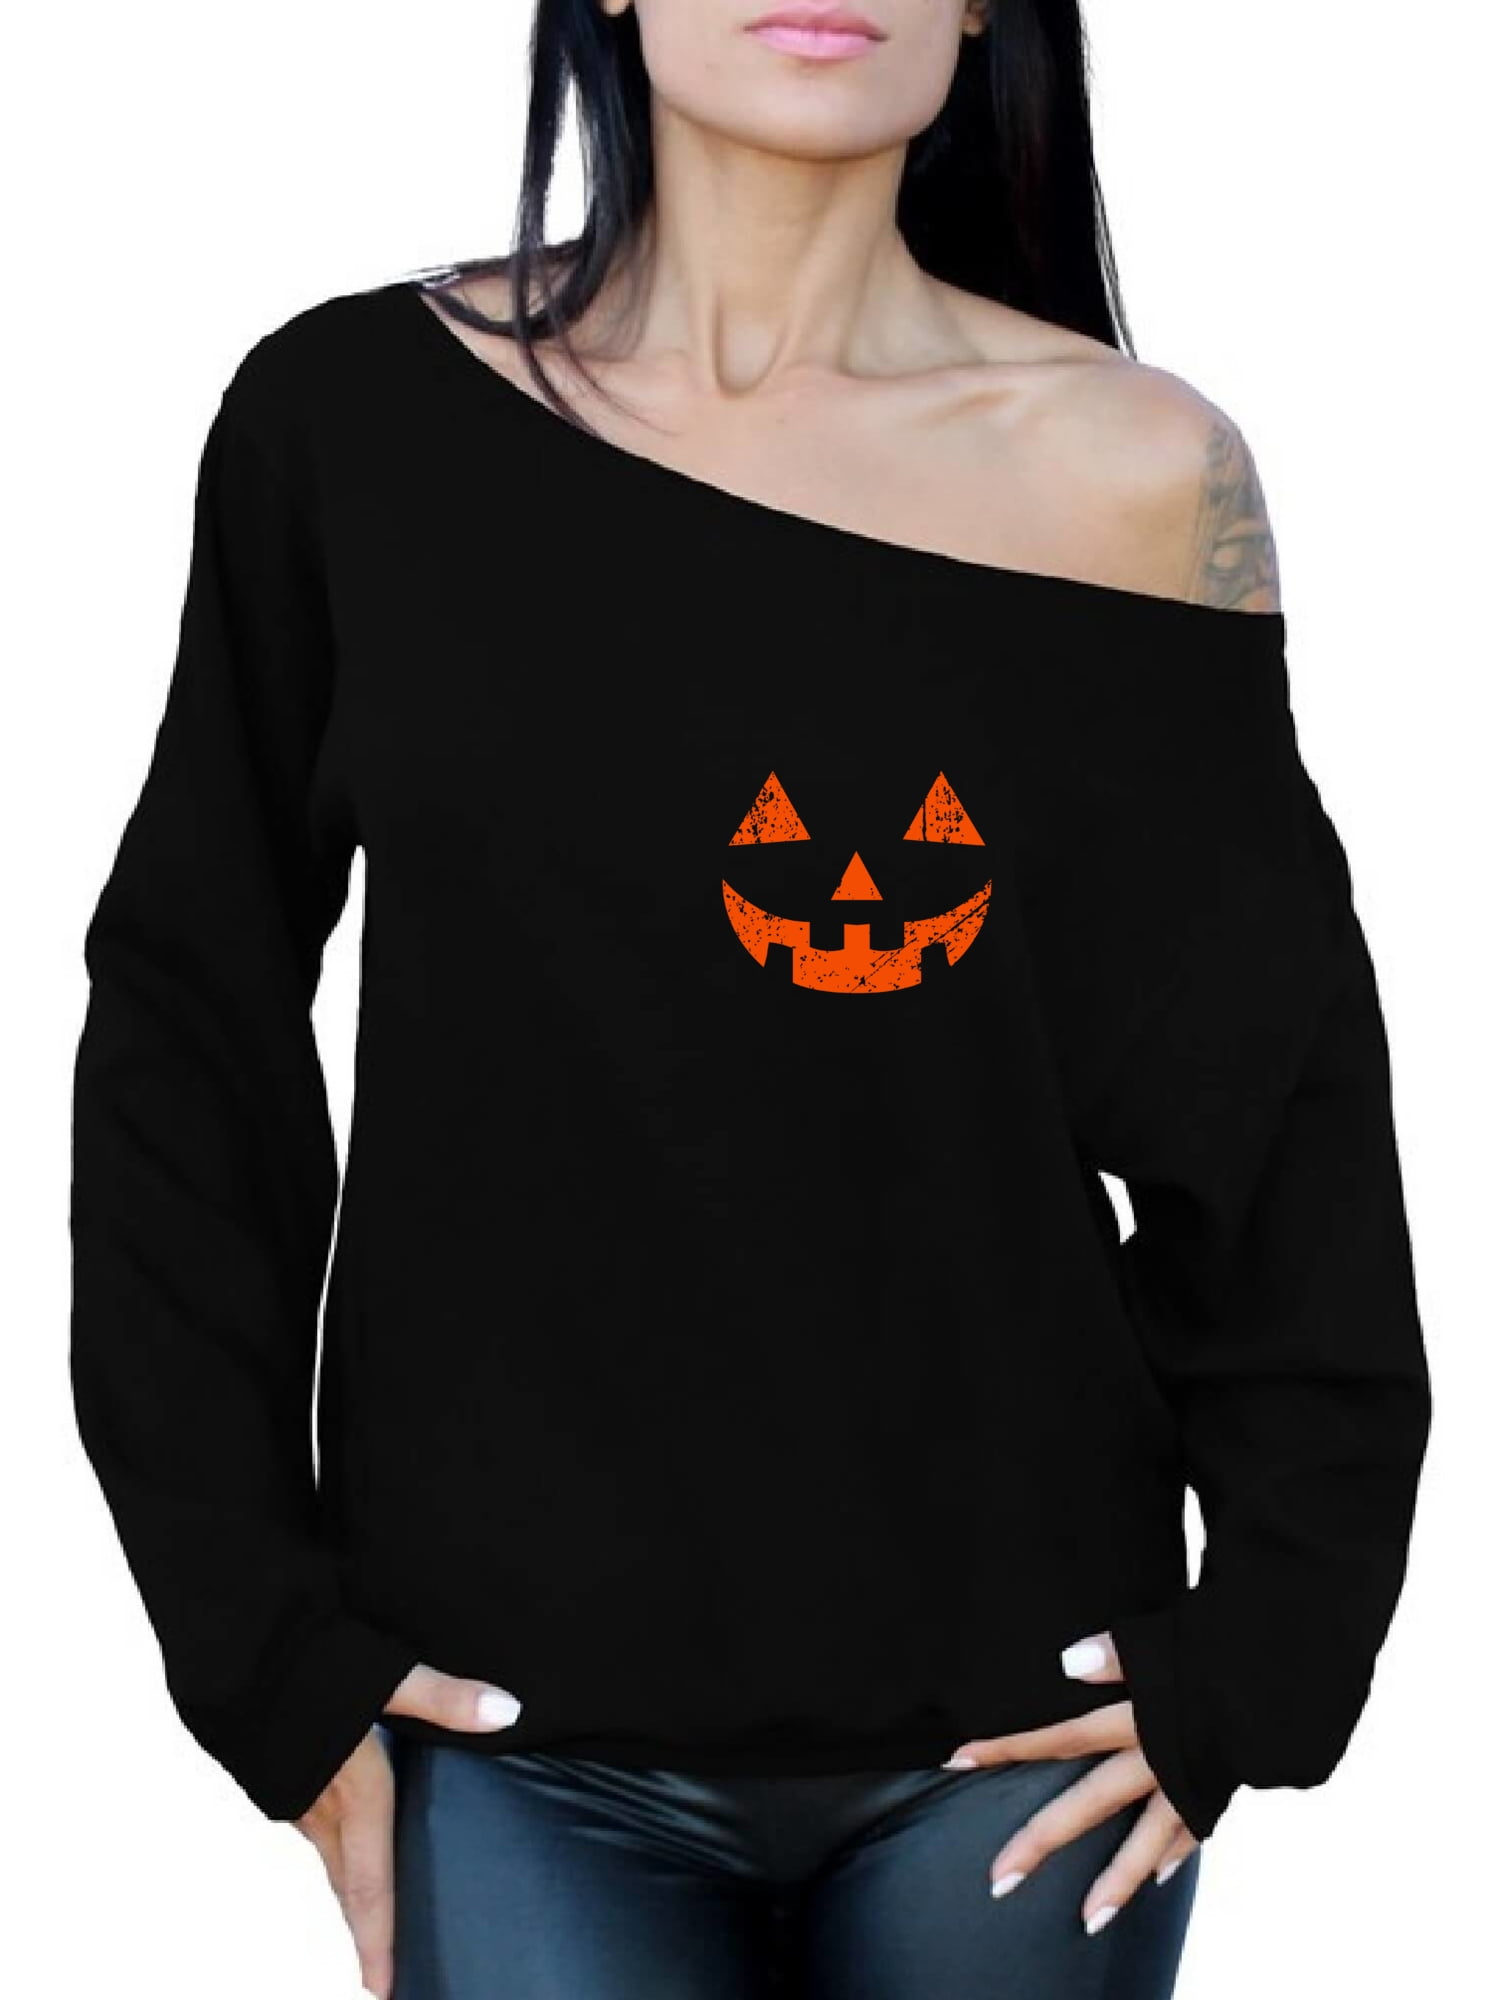 Women’s Halloween Sweatshirt Bat Ghost Pumpkin Printed Long Sleeve Off Shoulder Tops for Halloween Party Costume 